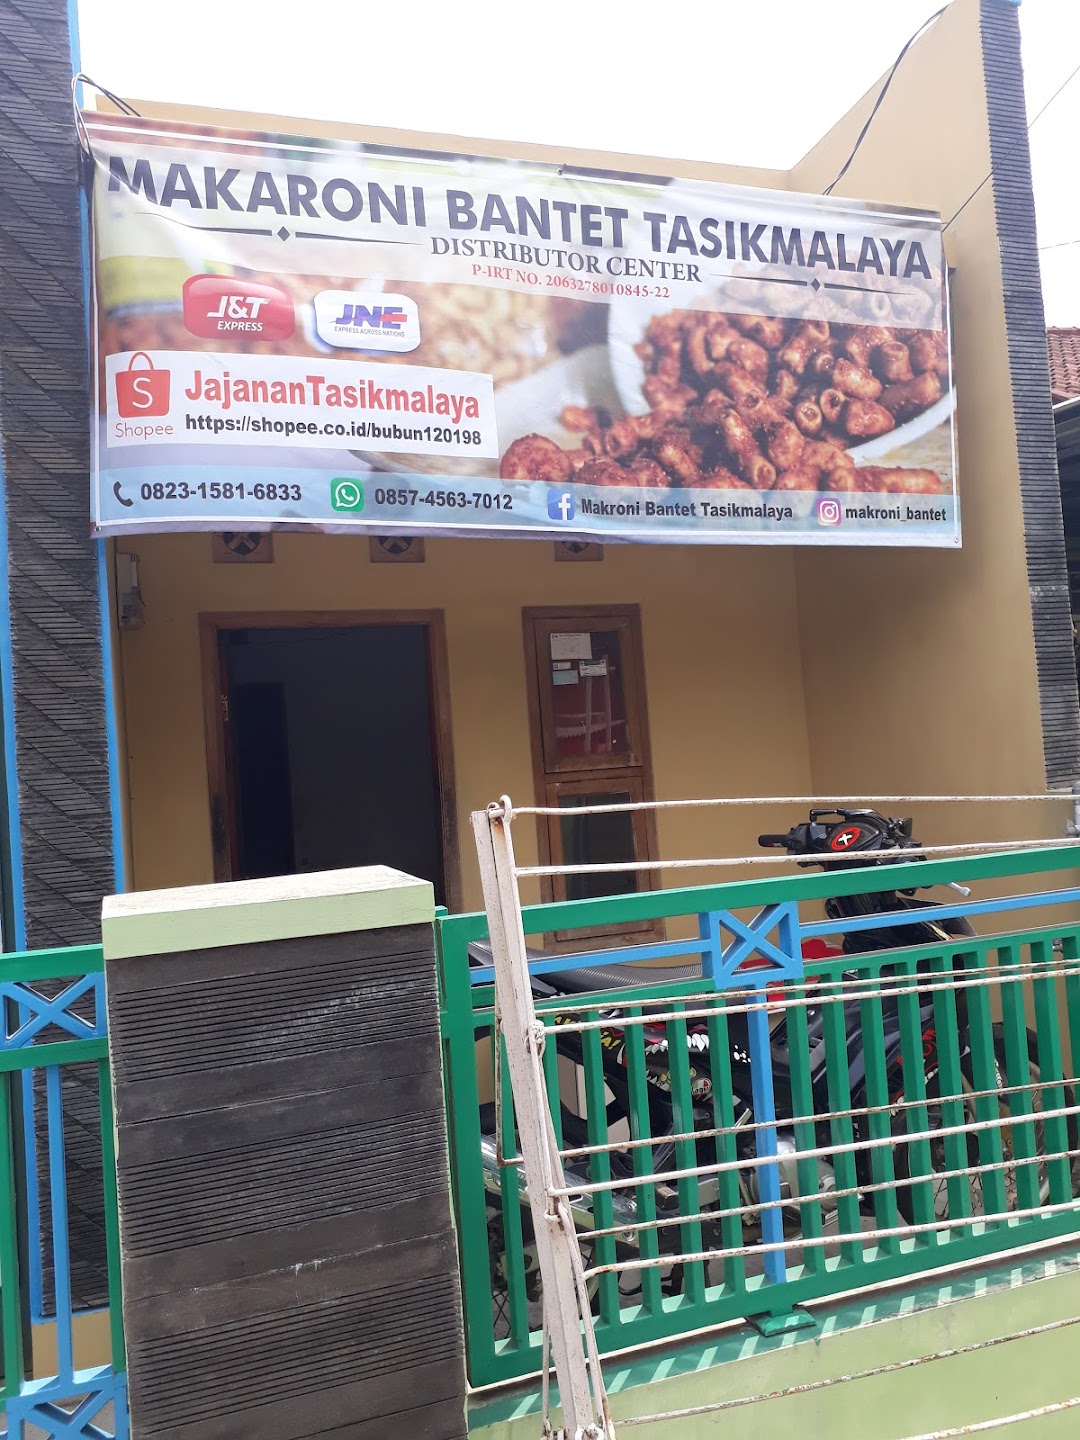 Distributor Center Makroni Bantet Tasikmalaya